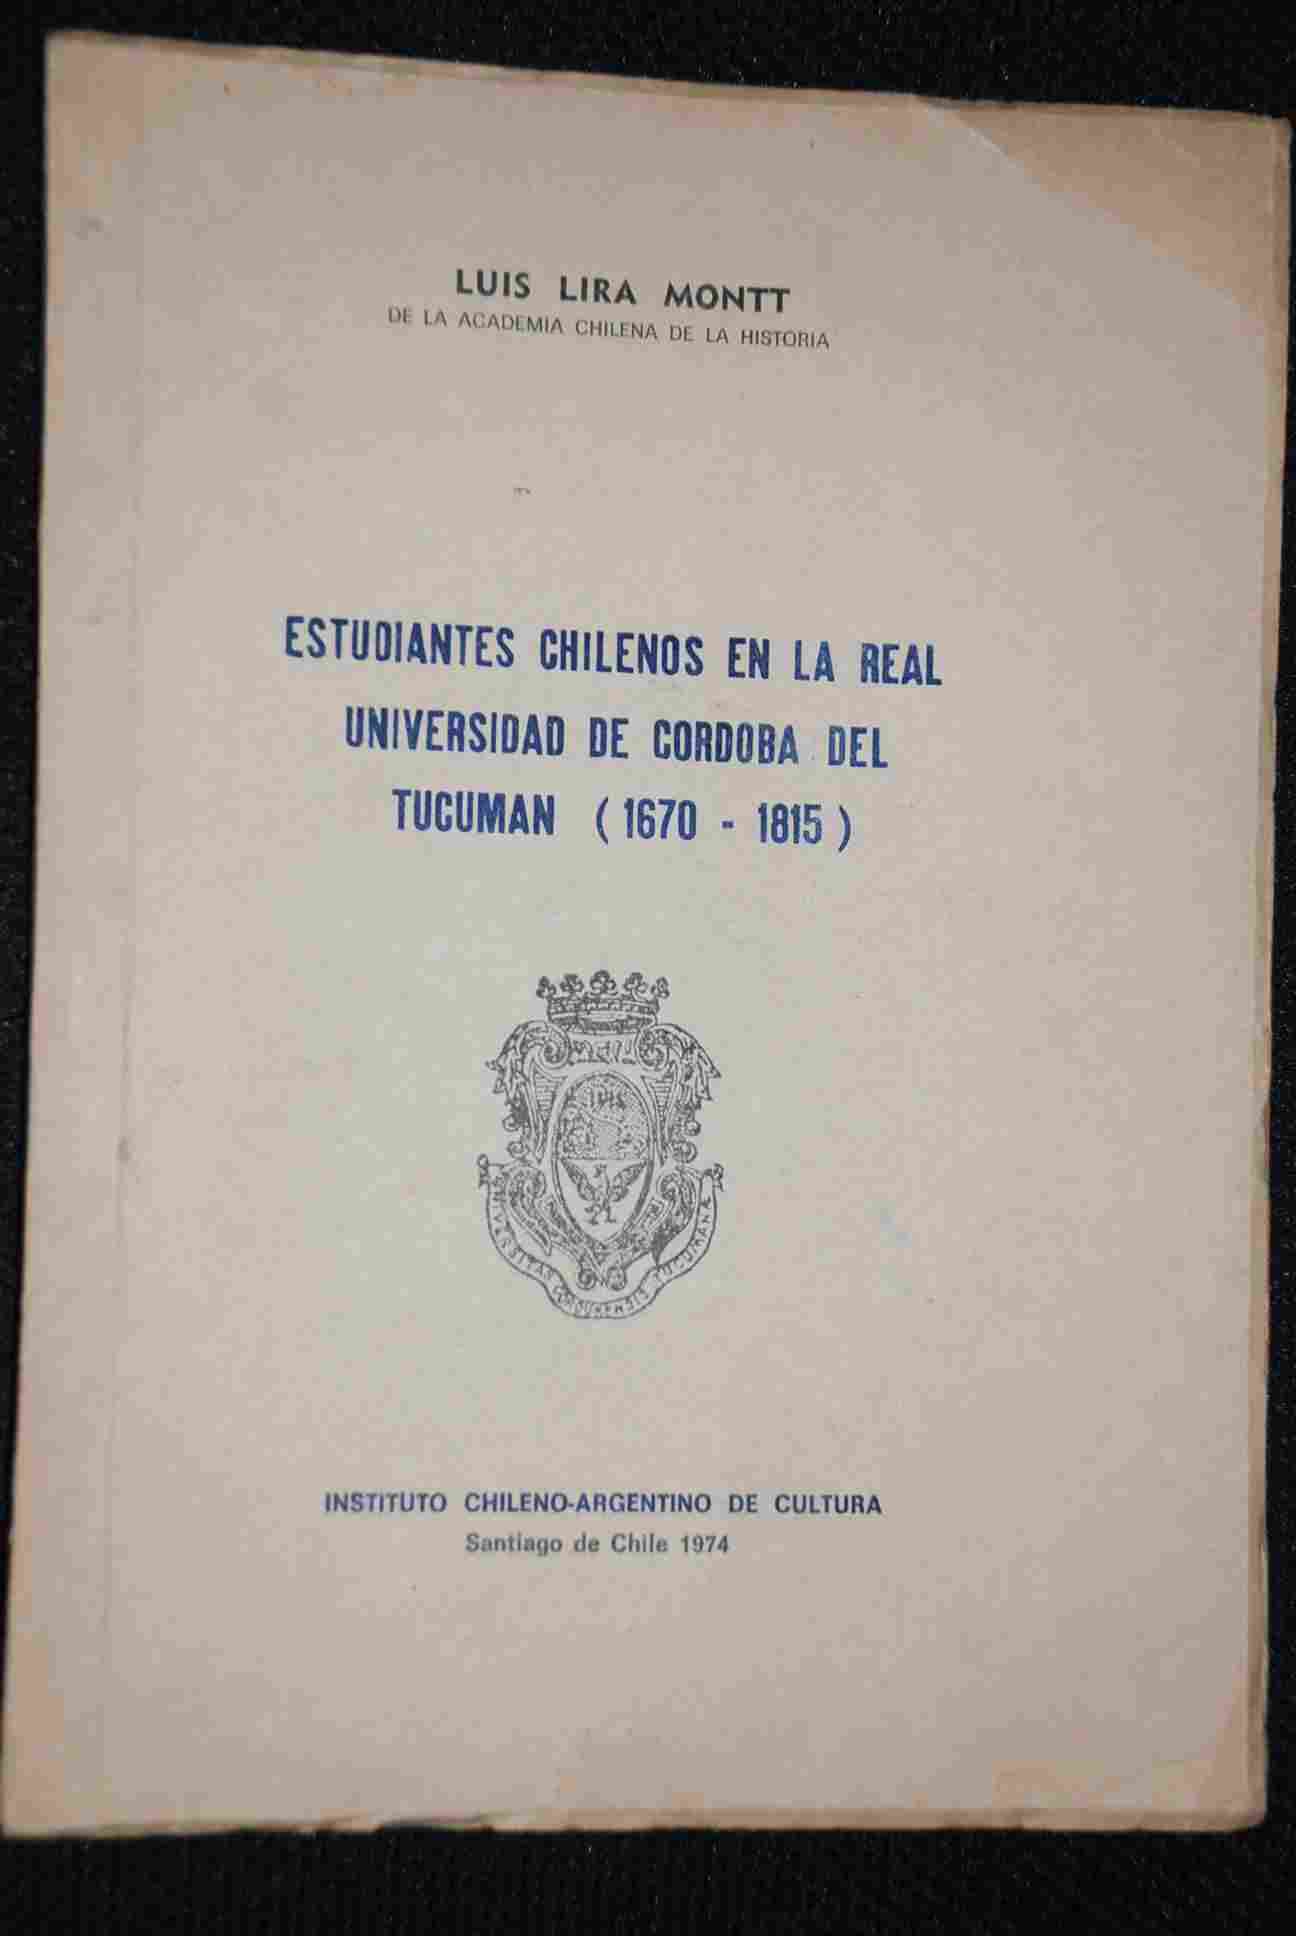  Luis Lira Montt. - Estudiantes chilenos en la Real Universidad de Córdoba del Tucumán (1670-1815)